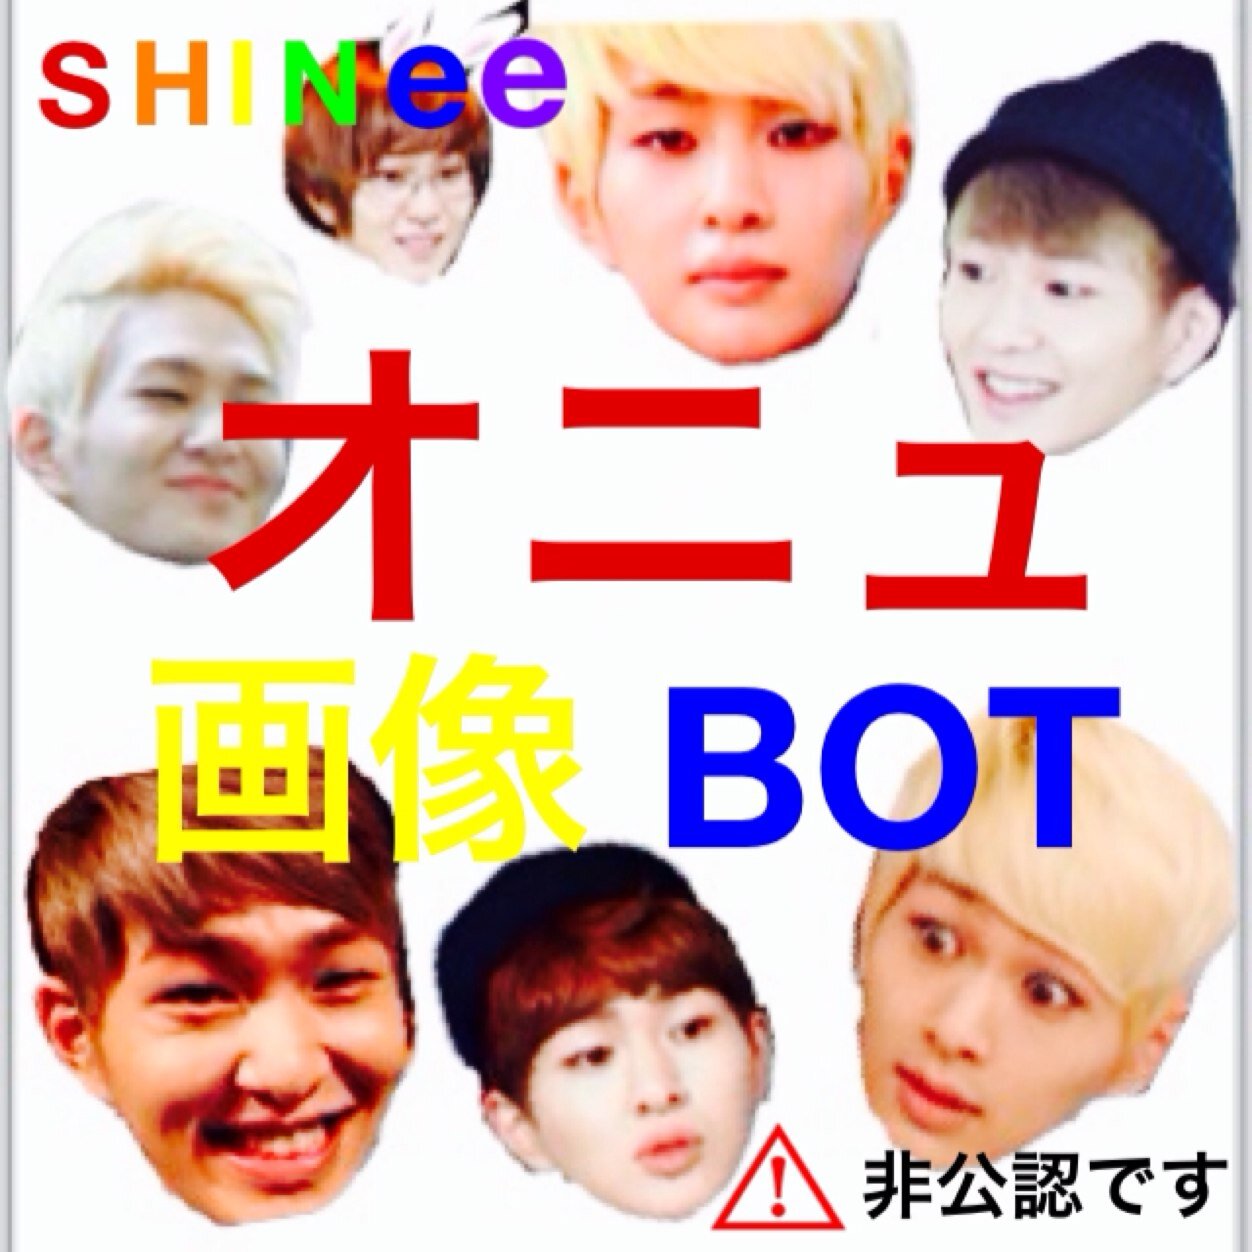 Shineeオニュ画像bot Shinee0new Bot Twitter